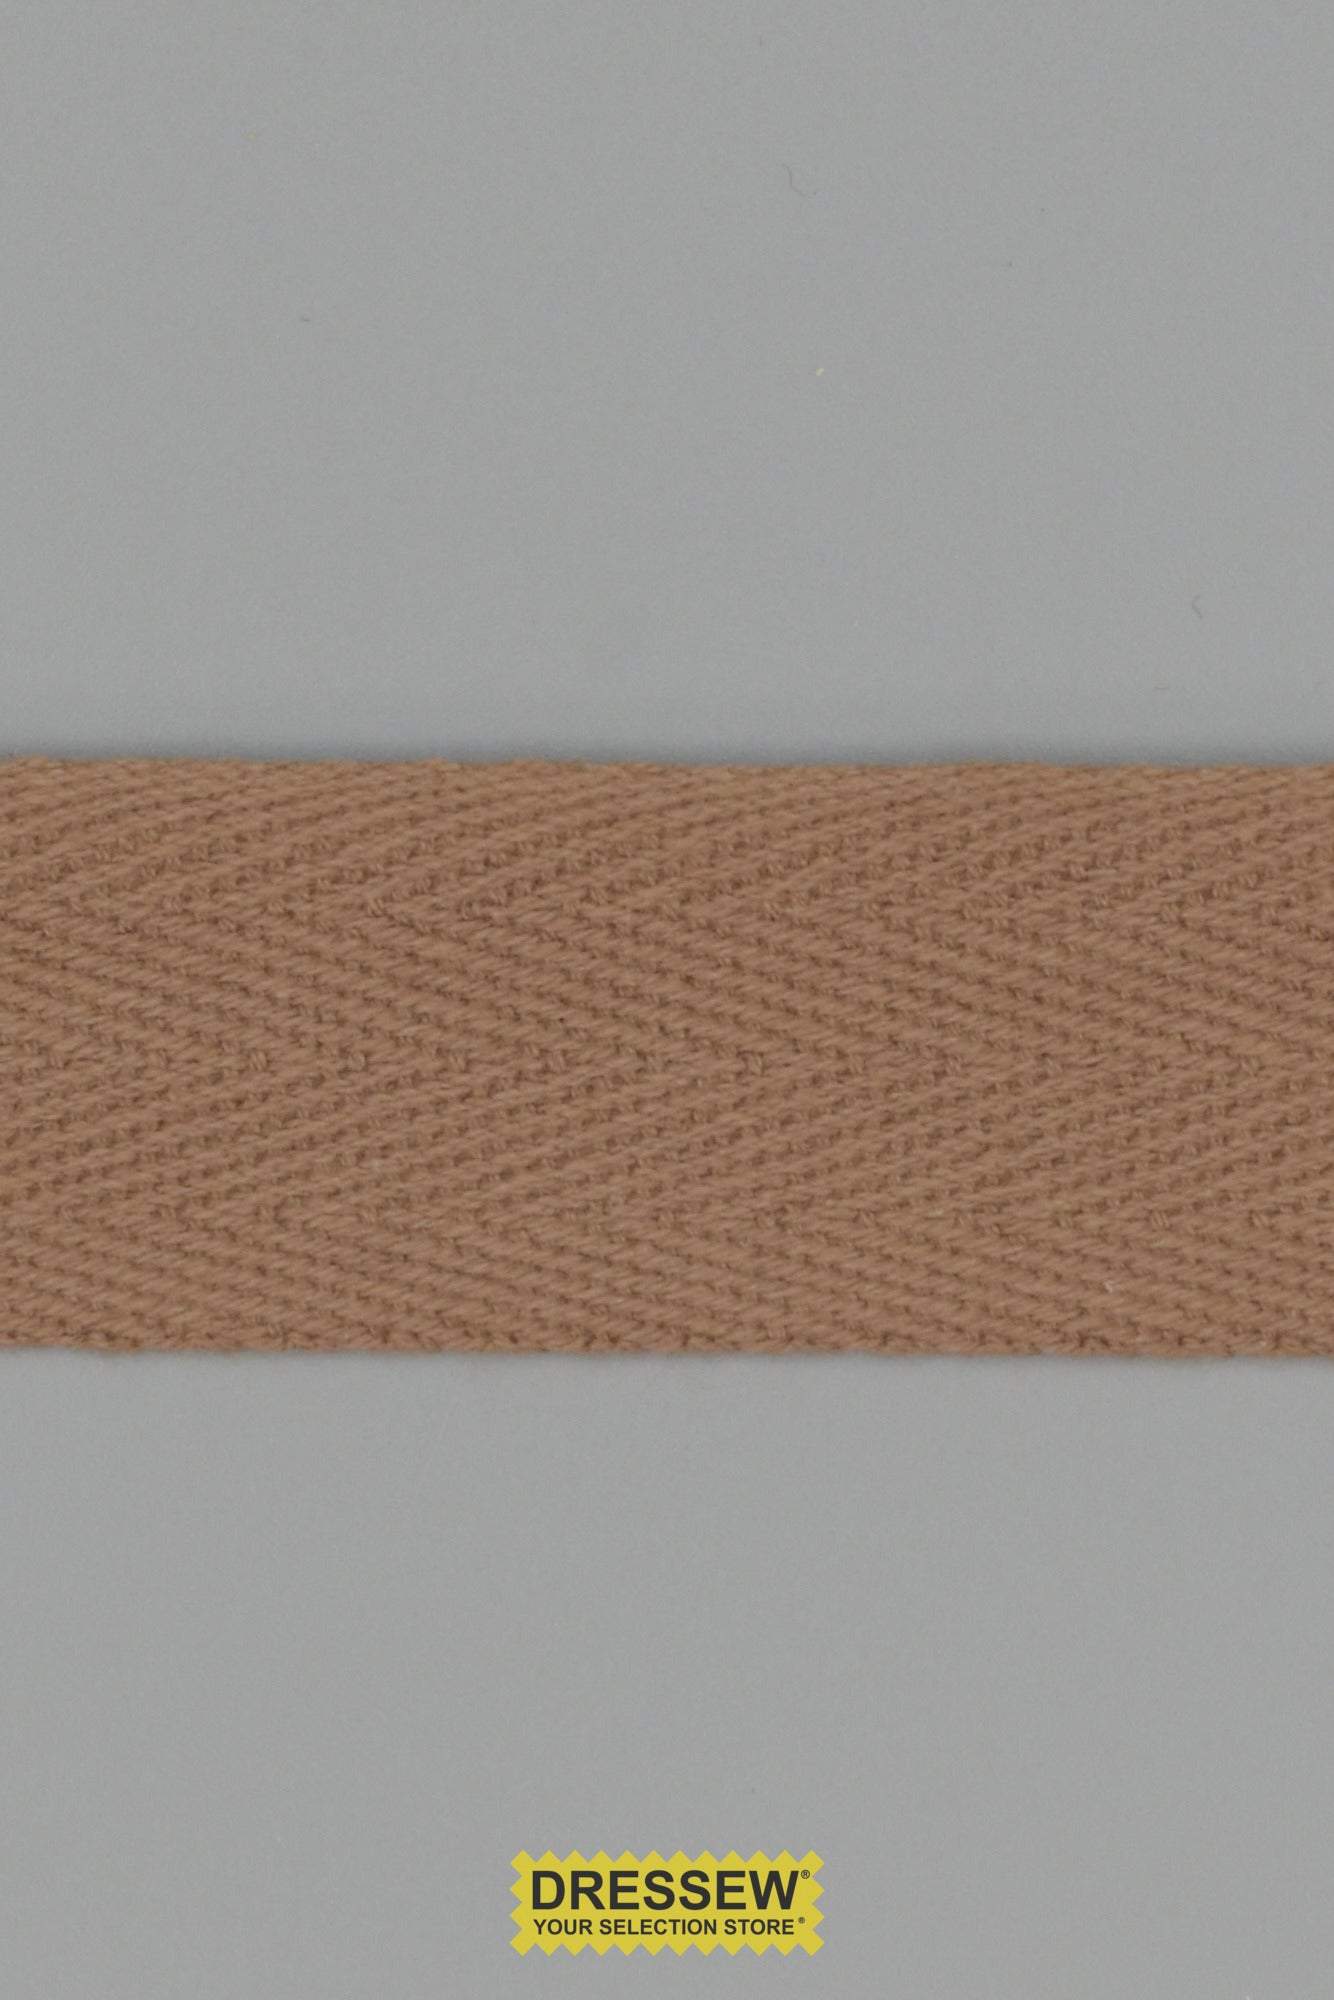 Cotton Twill Tape 25mm (1") Dark Beige